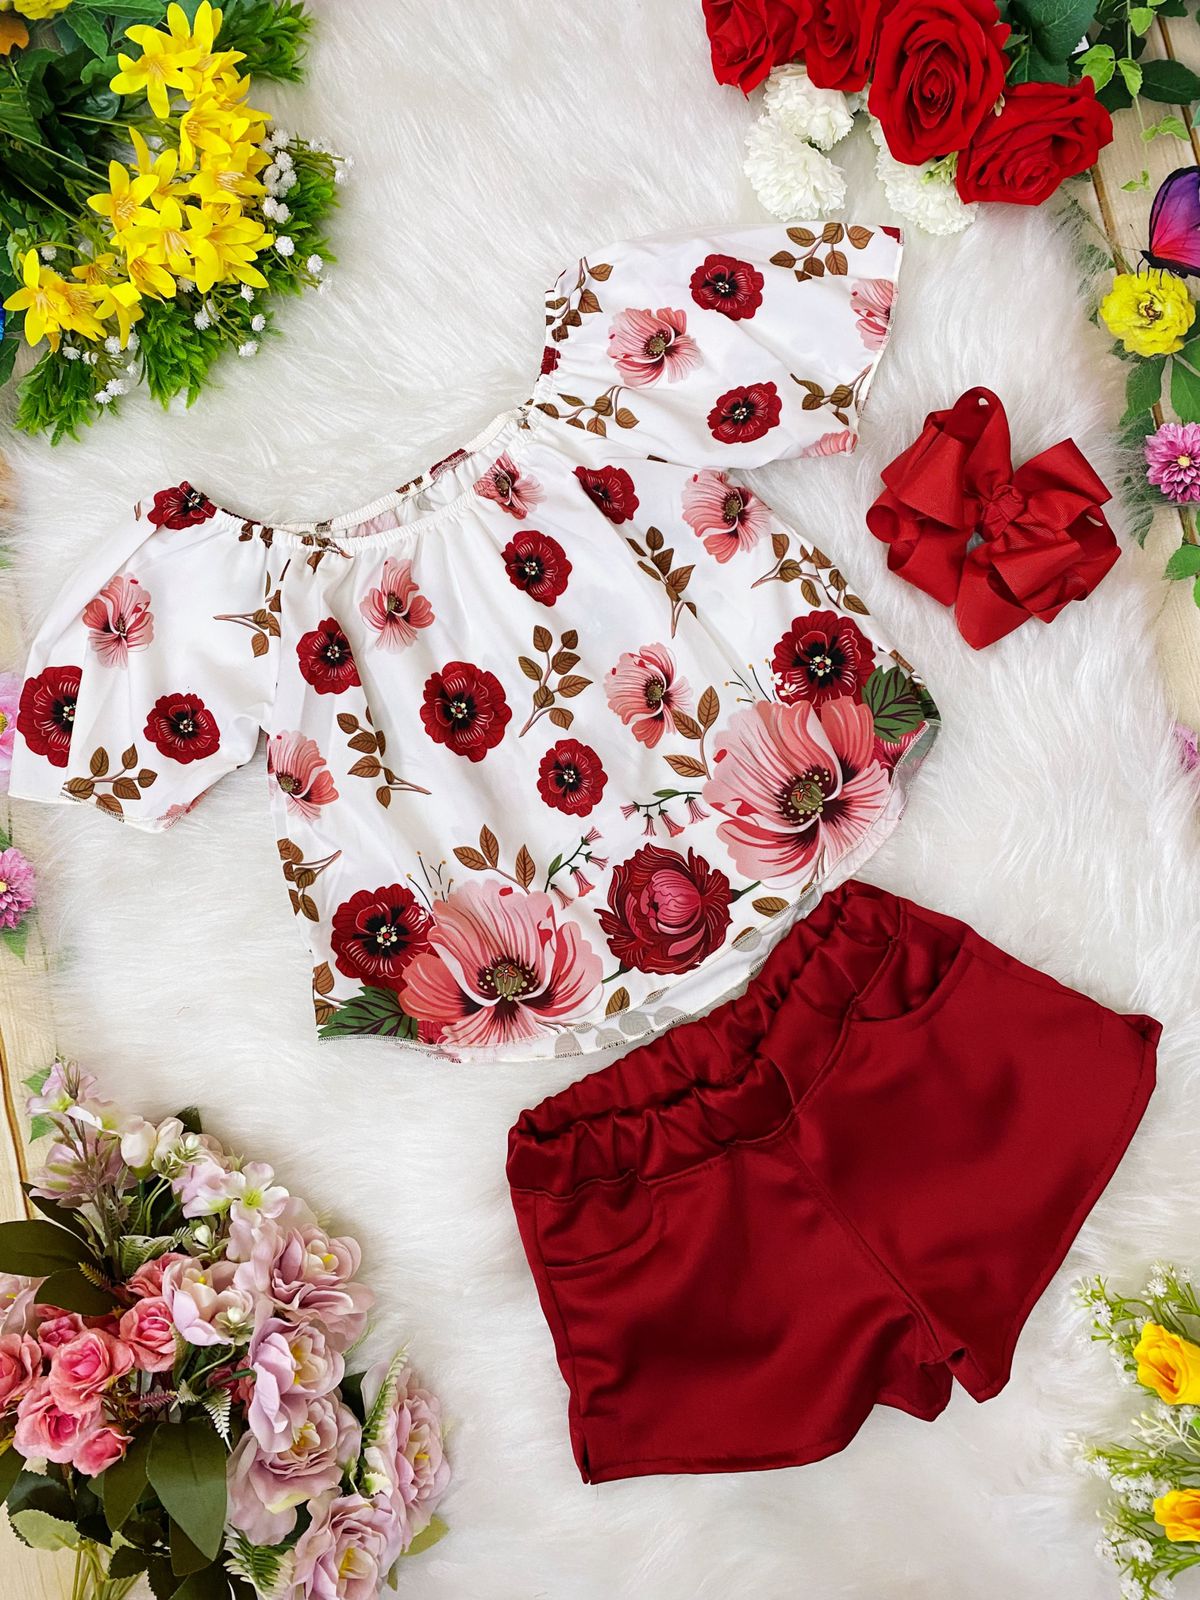 Conjunto Infantil Blusa Off Floral Vermelho Shorts Vermelho